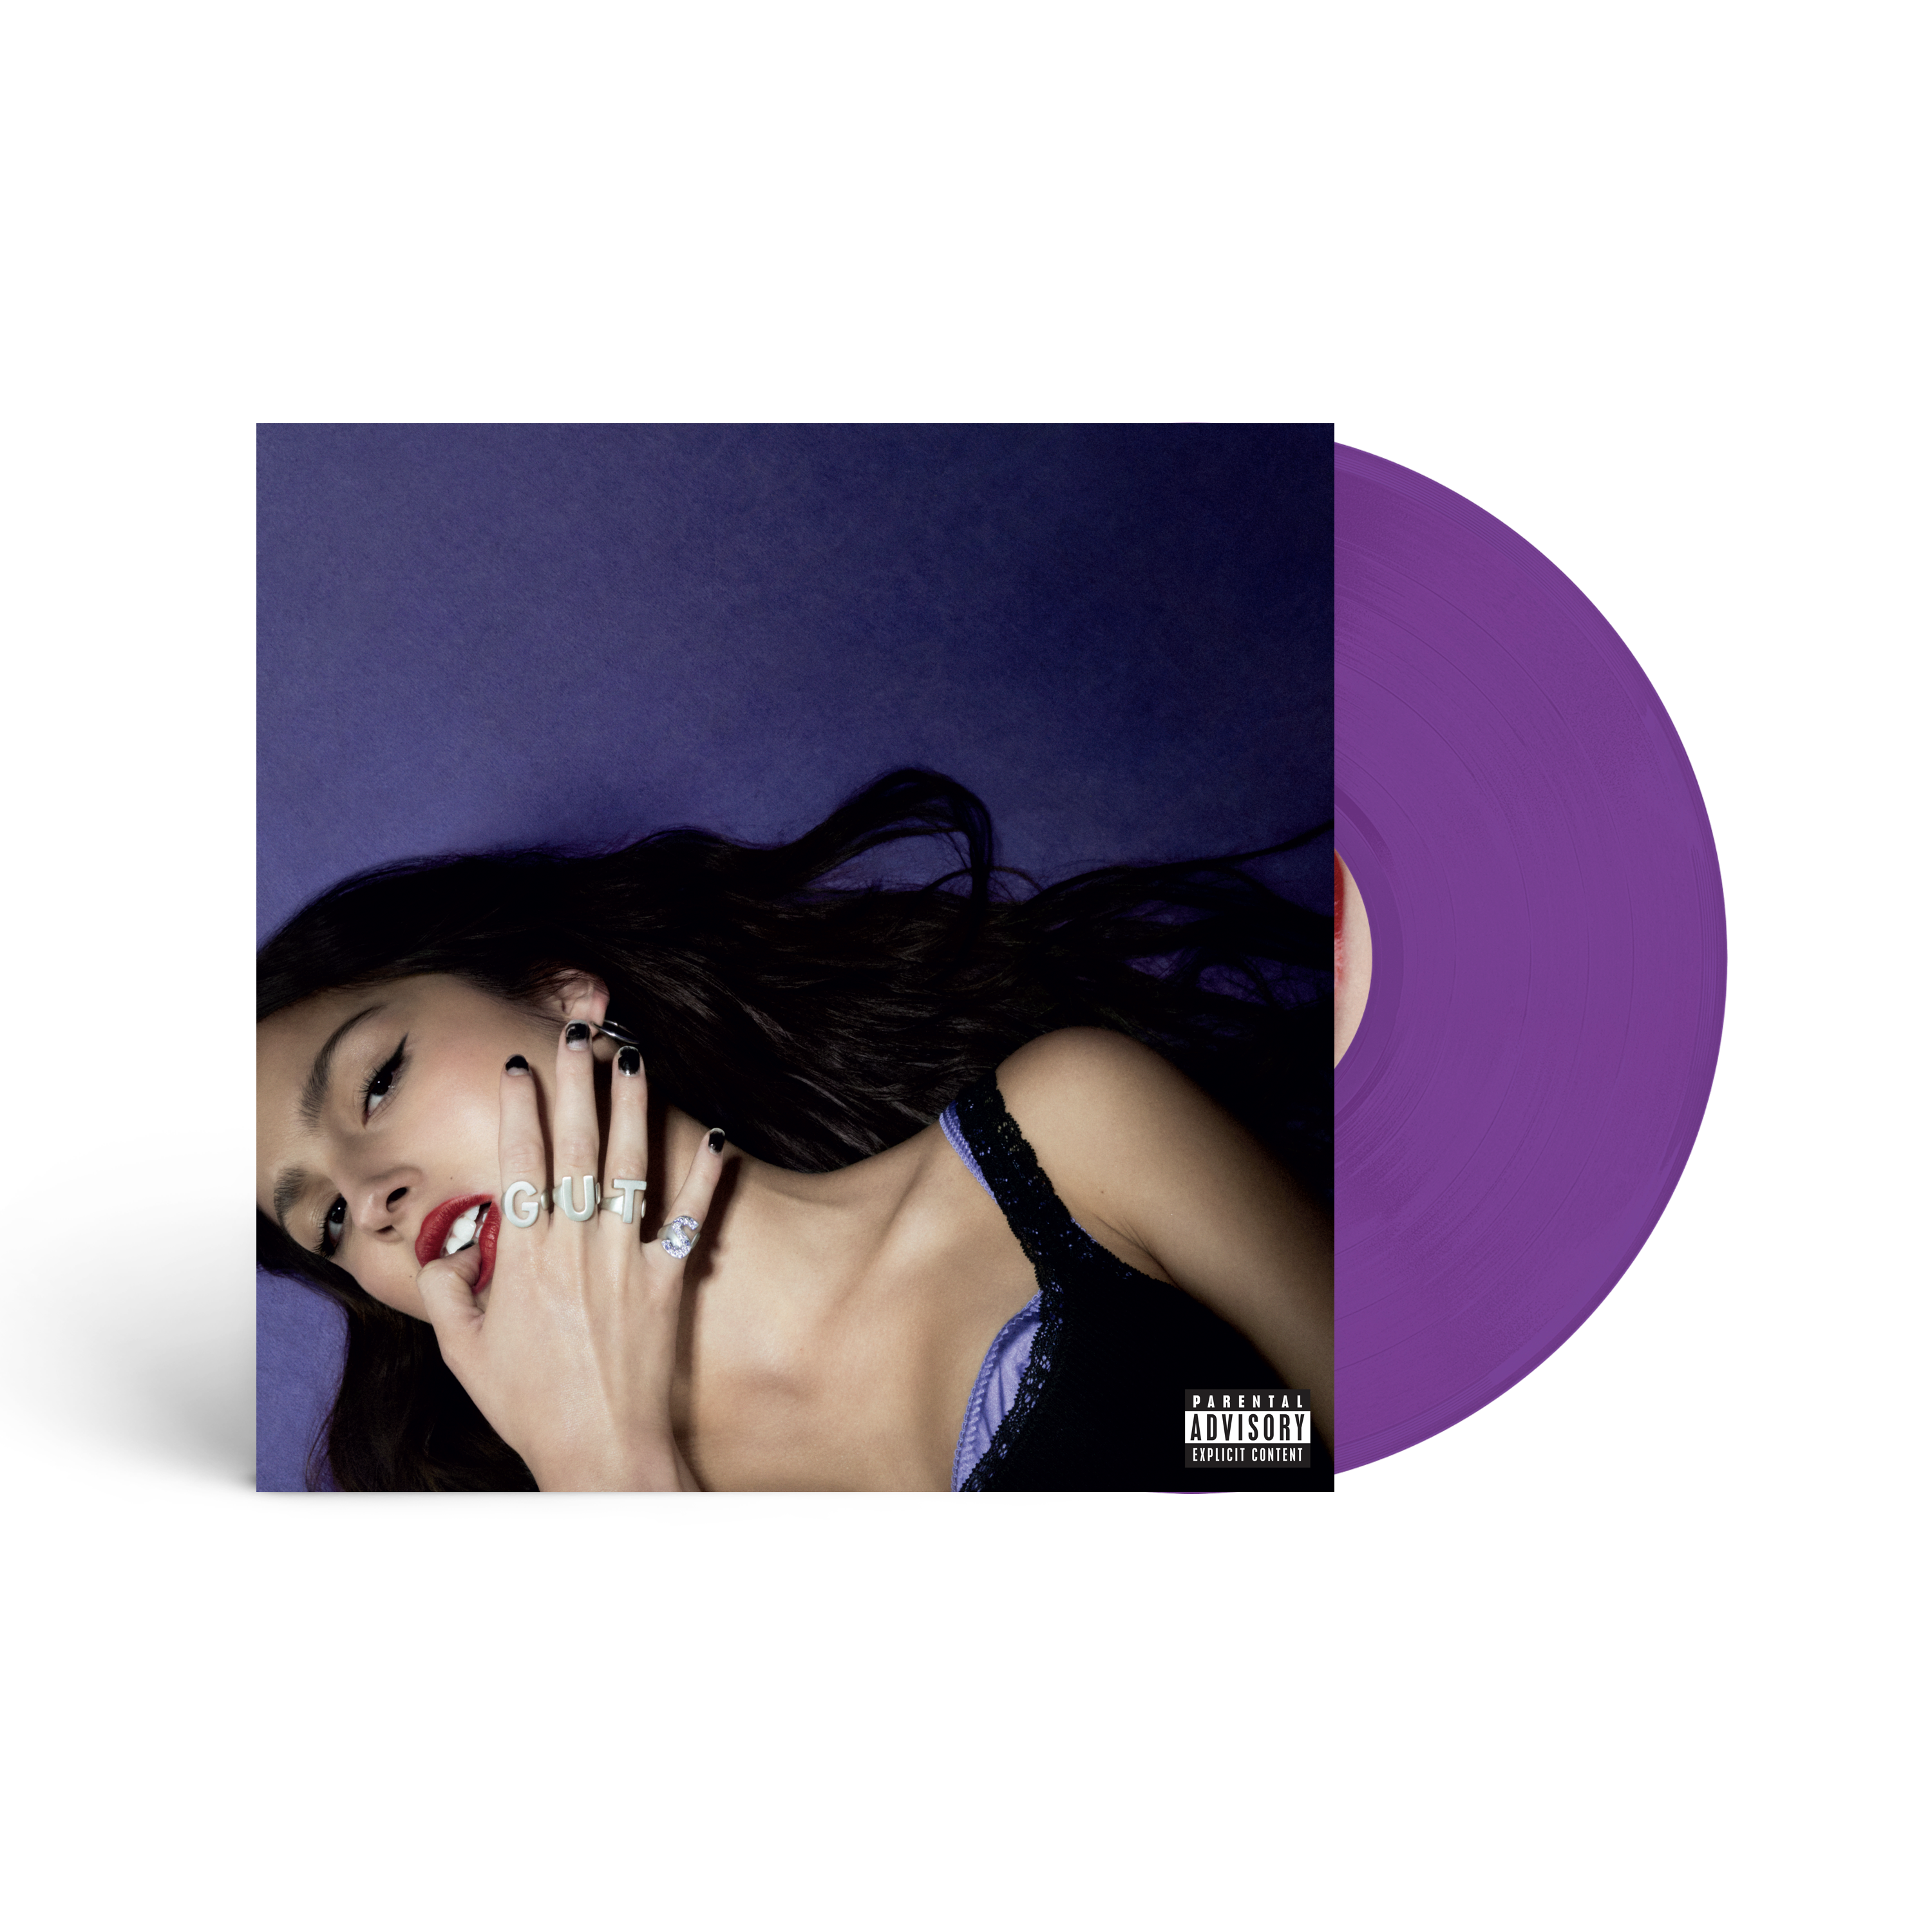 GUTS vinyle violet édition limitée - exclusivité store